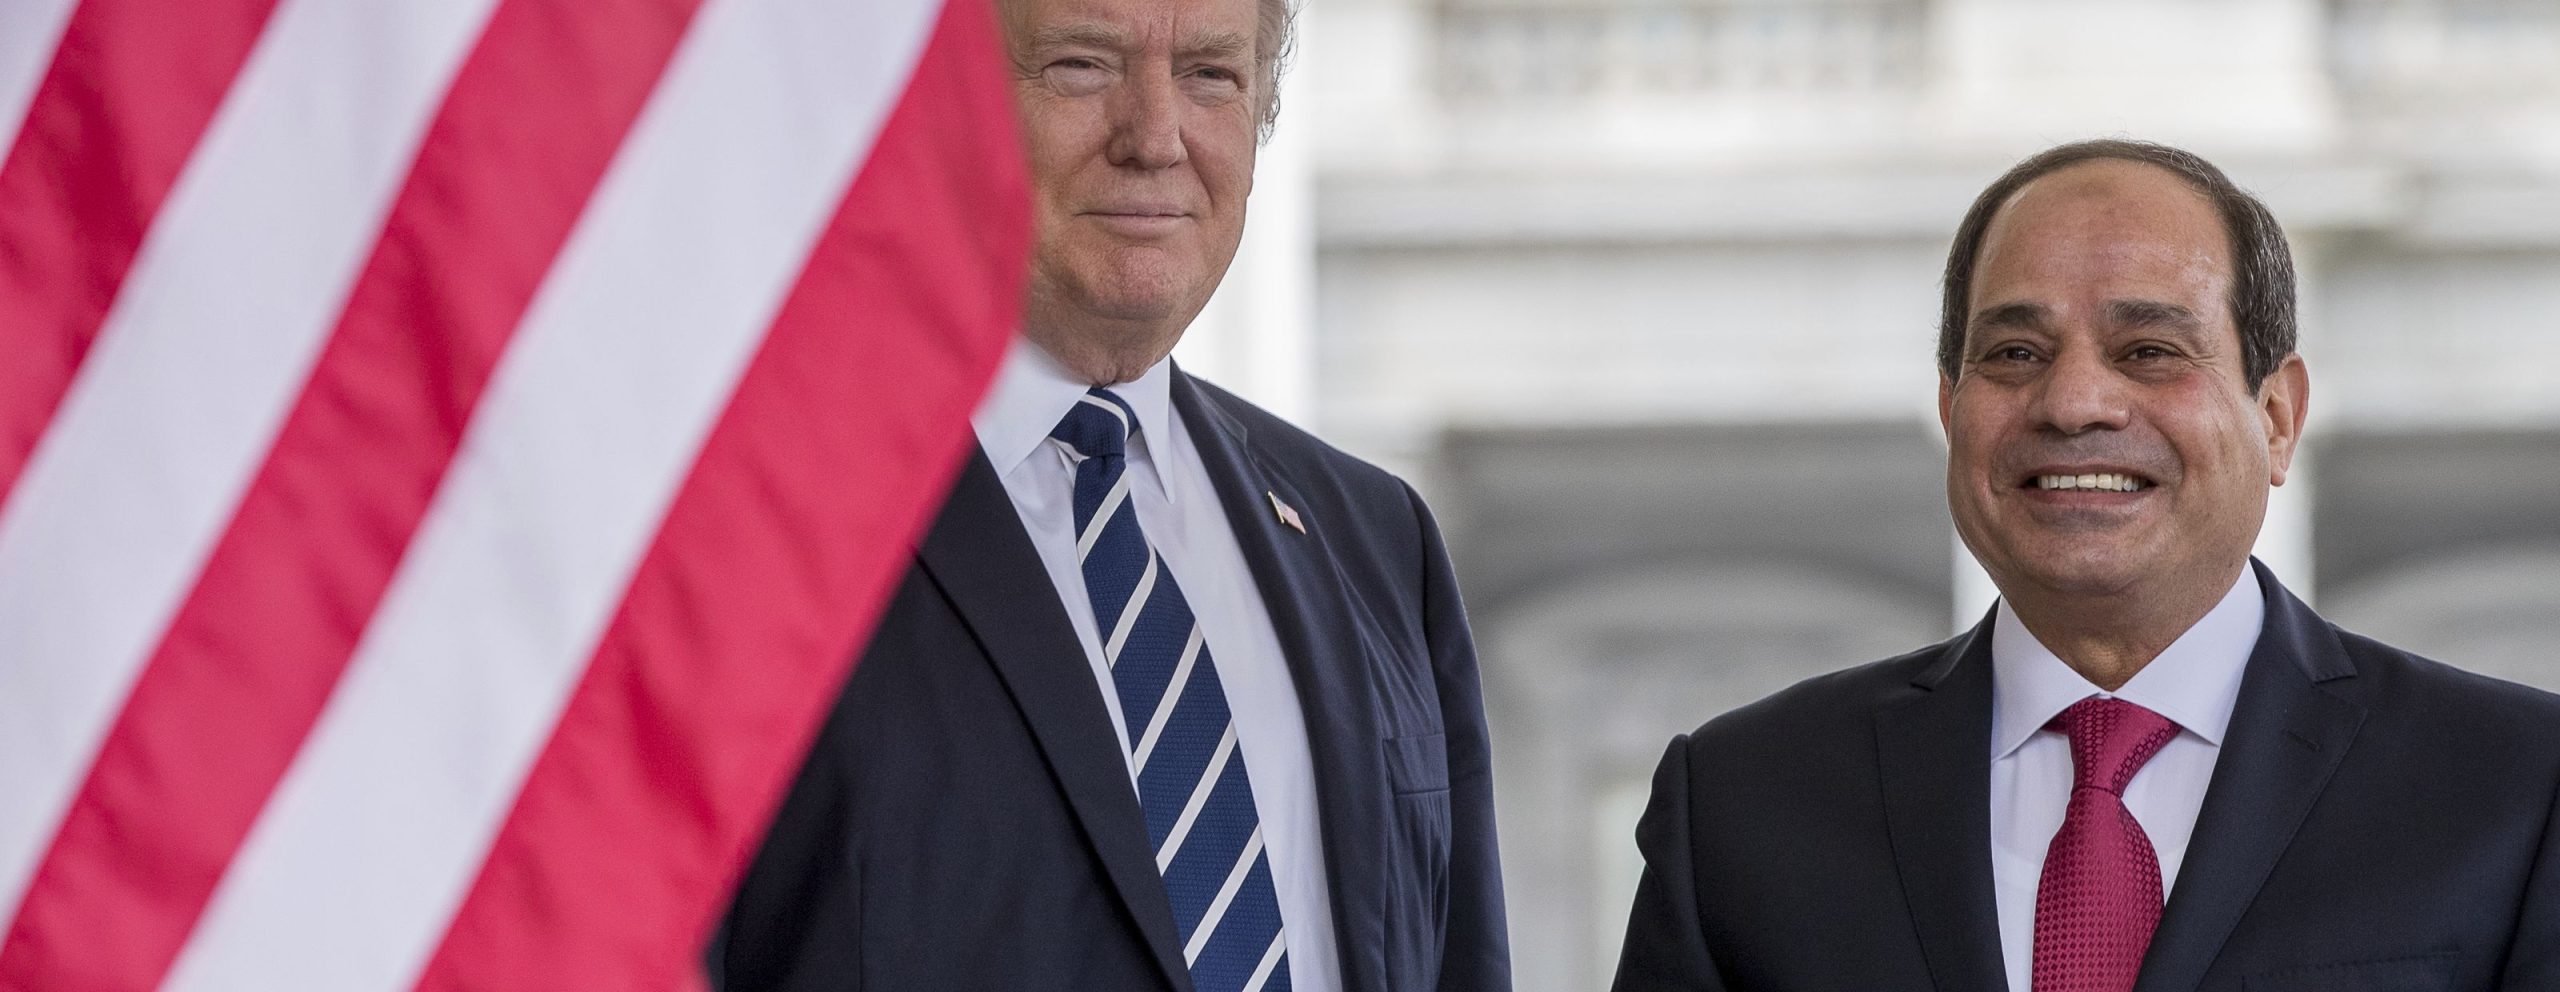 Αίγυπτος: Επικρίνει την απόφαση για διακοπή της οικονομικής βοήθειας των ΗΠΑ- Ακύρωση συνάντησης Αλ Σίσι και Τζ.Κούσνερ;